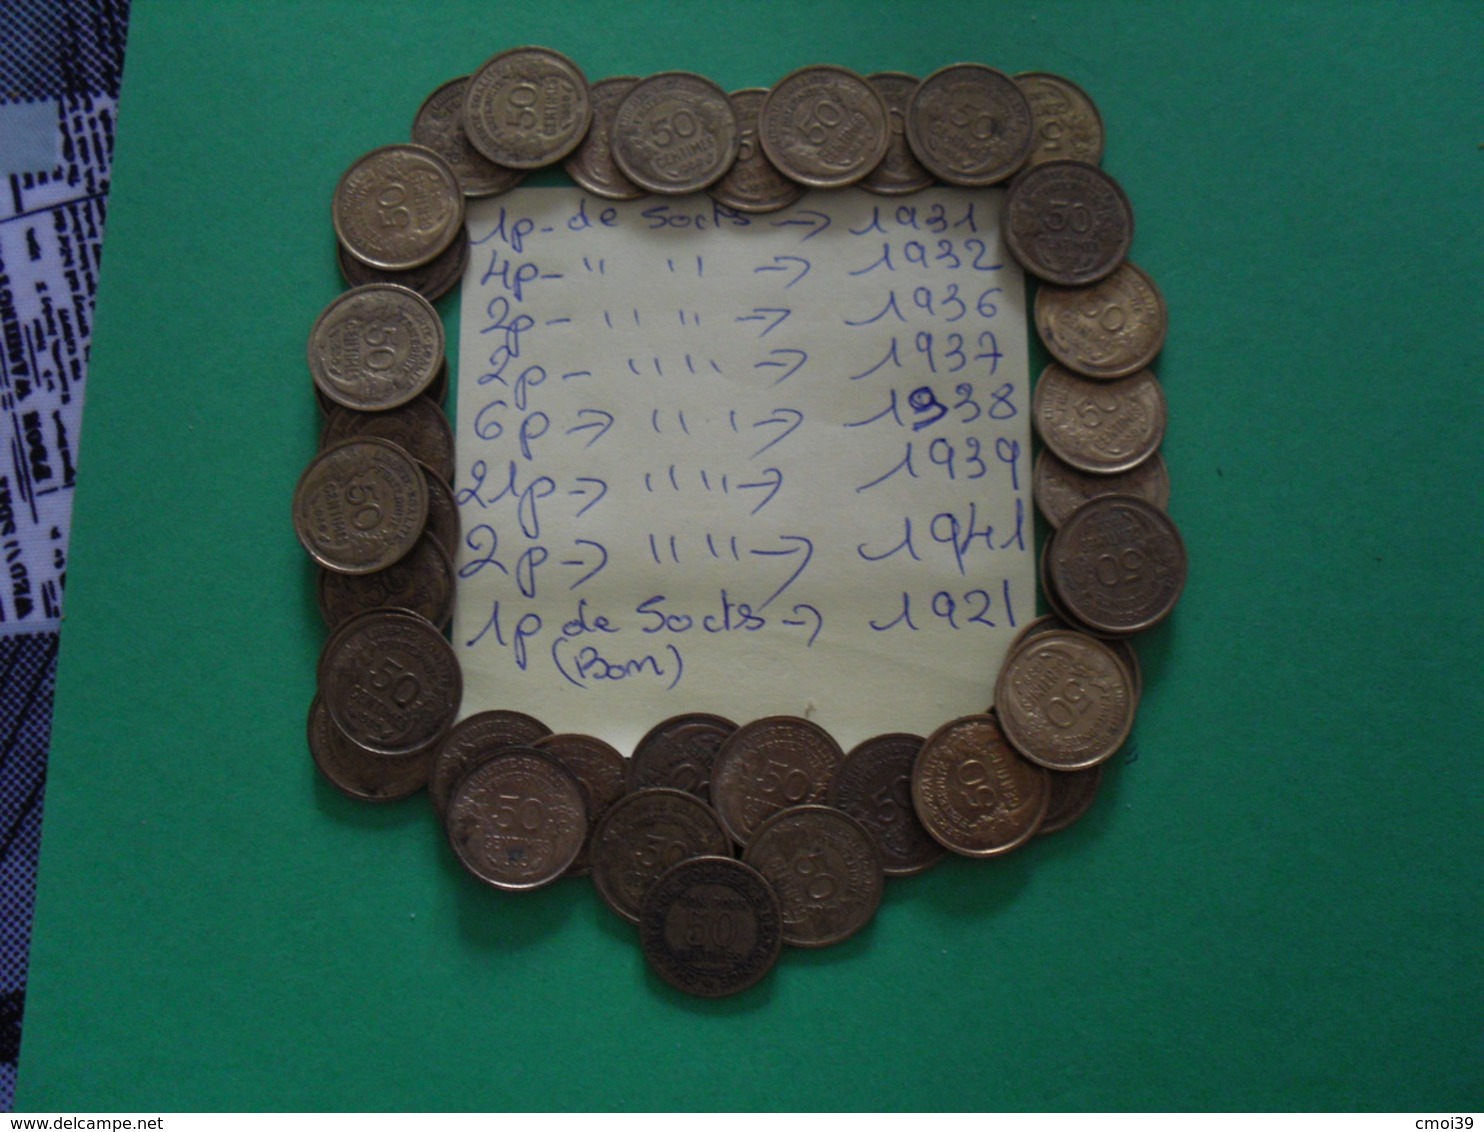 37 Pièces De 50 Cts Et Une Pièce ( Bon Pour50cts) - Mezclas - Monedas